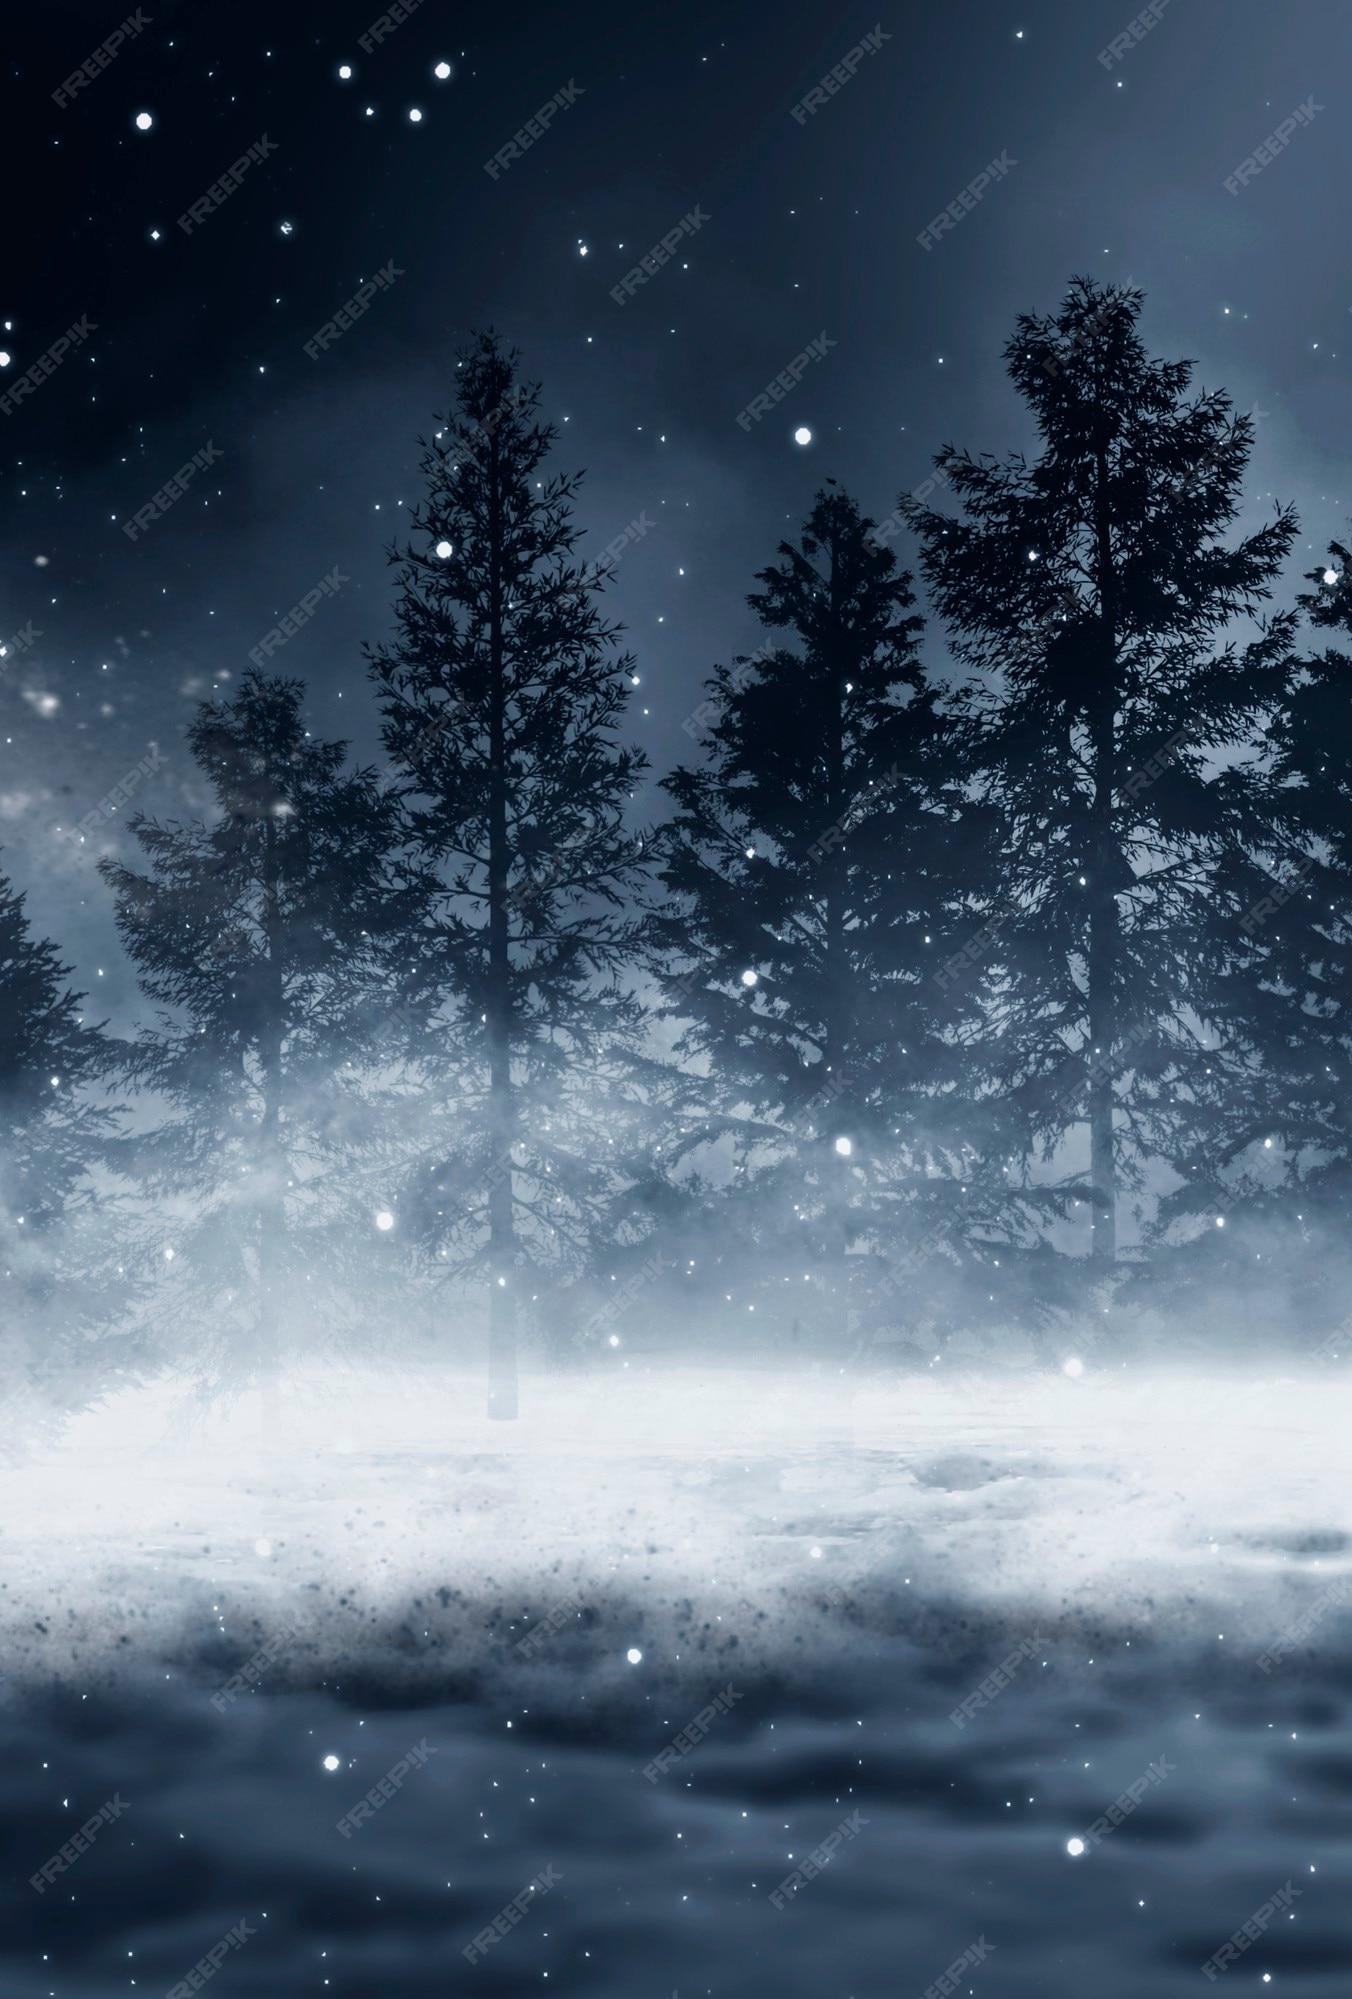 Premium Photo Dark Abstract Winter Forest Background